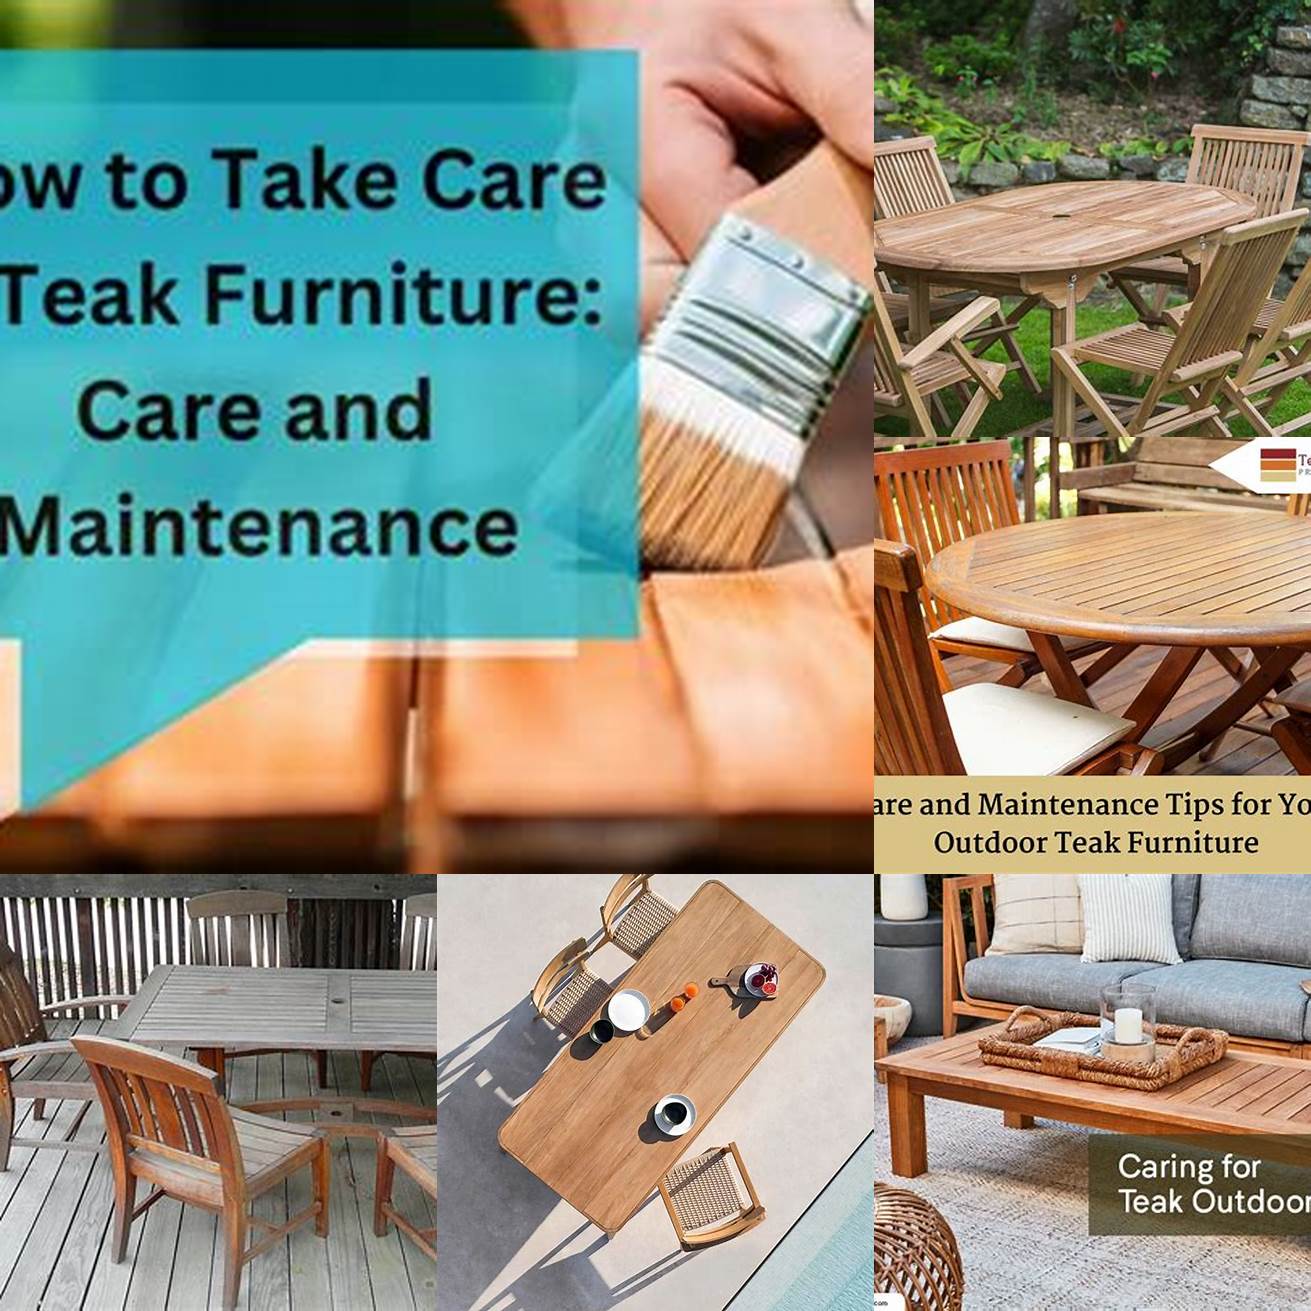 A teak furniture care guide